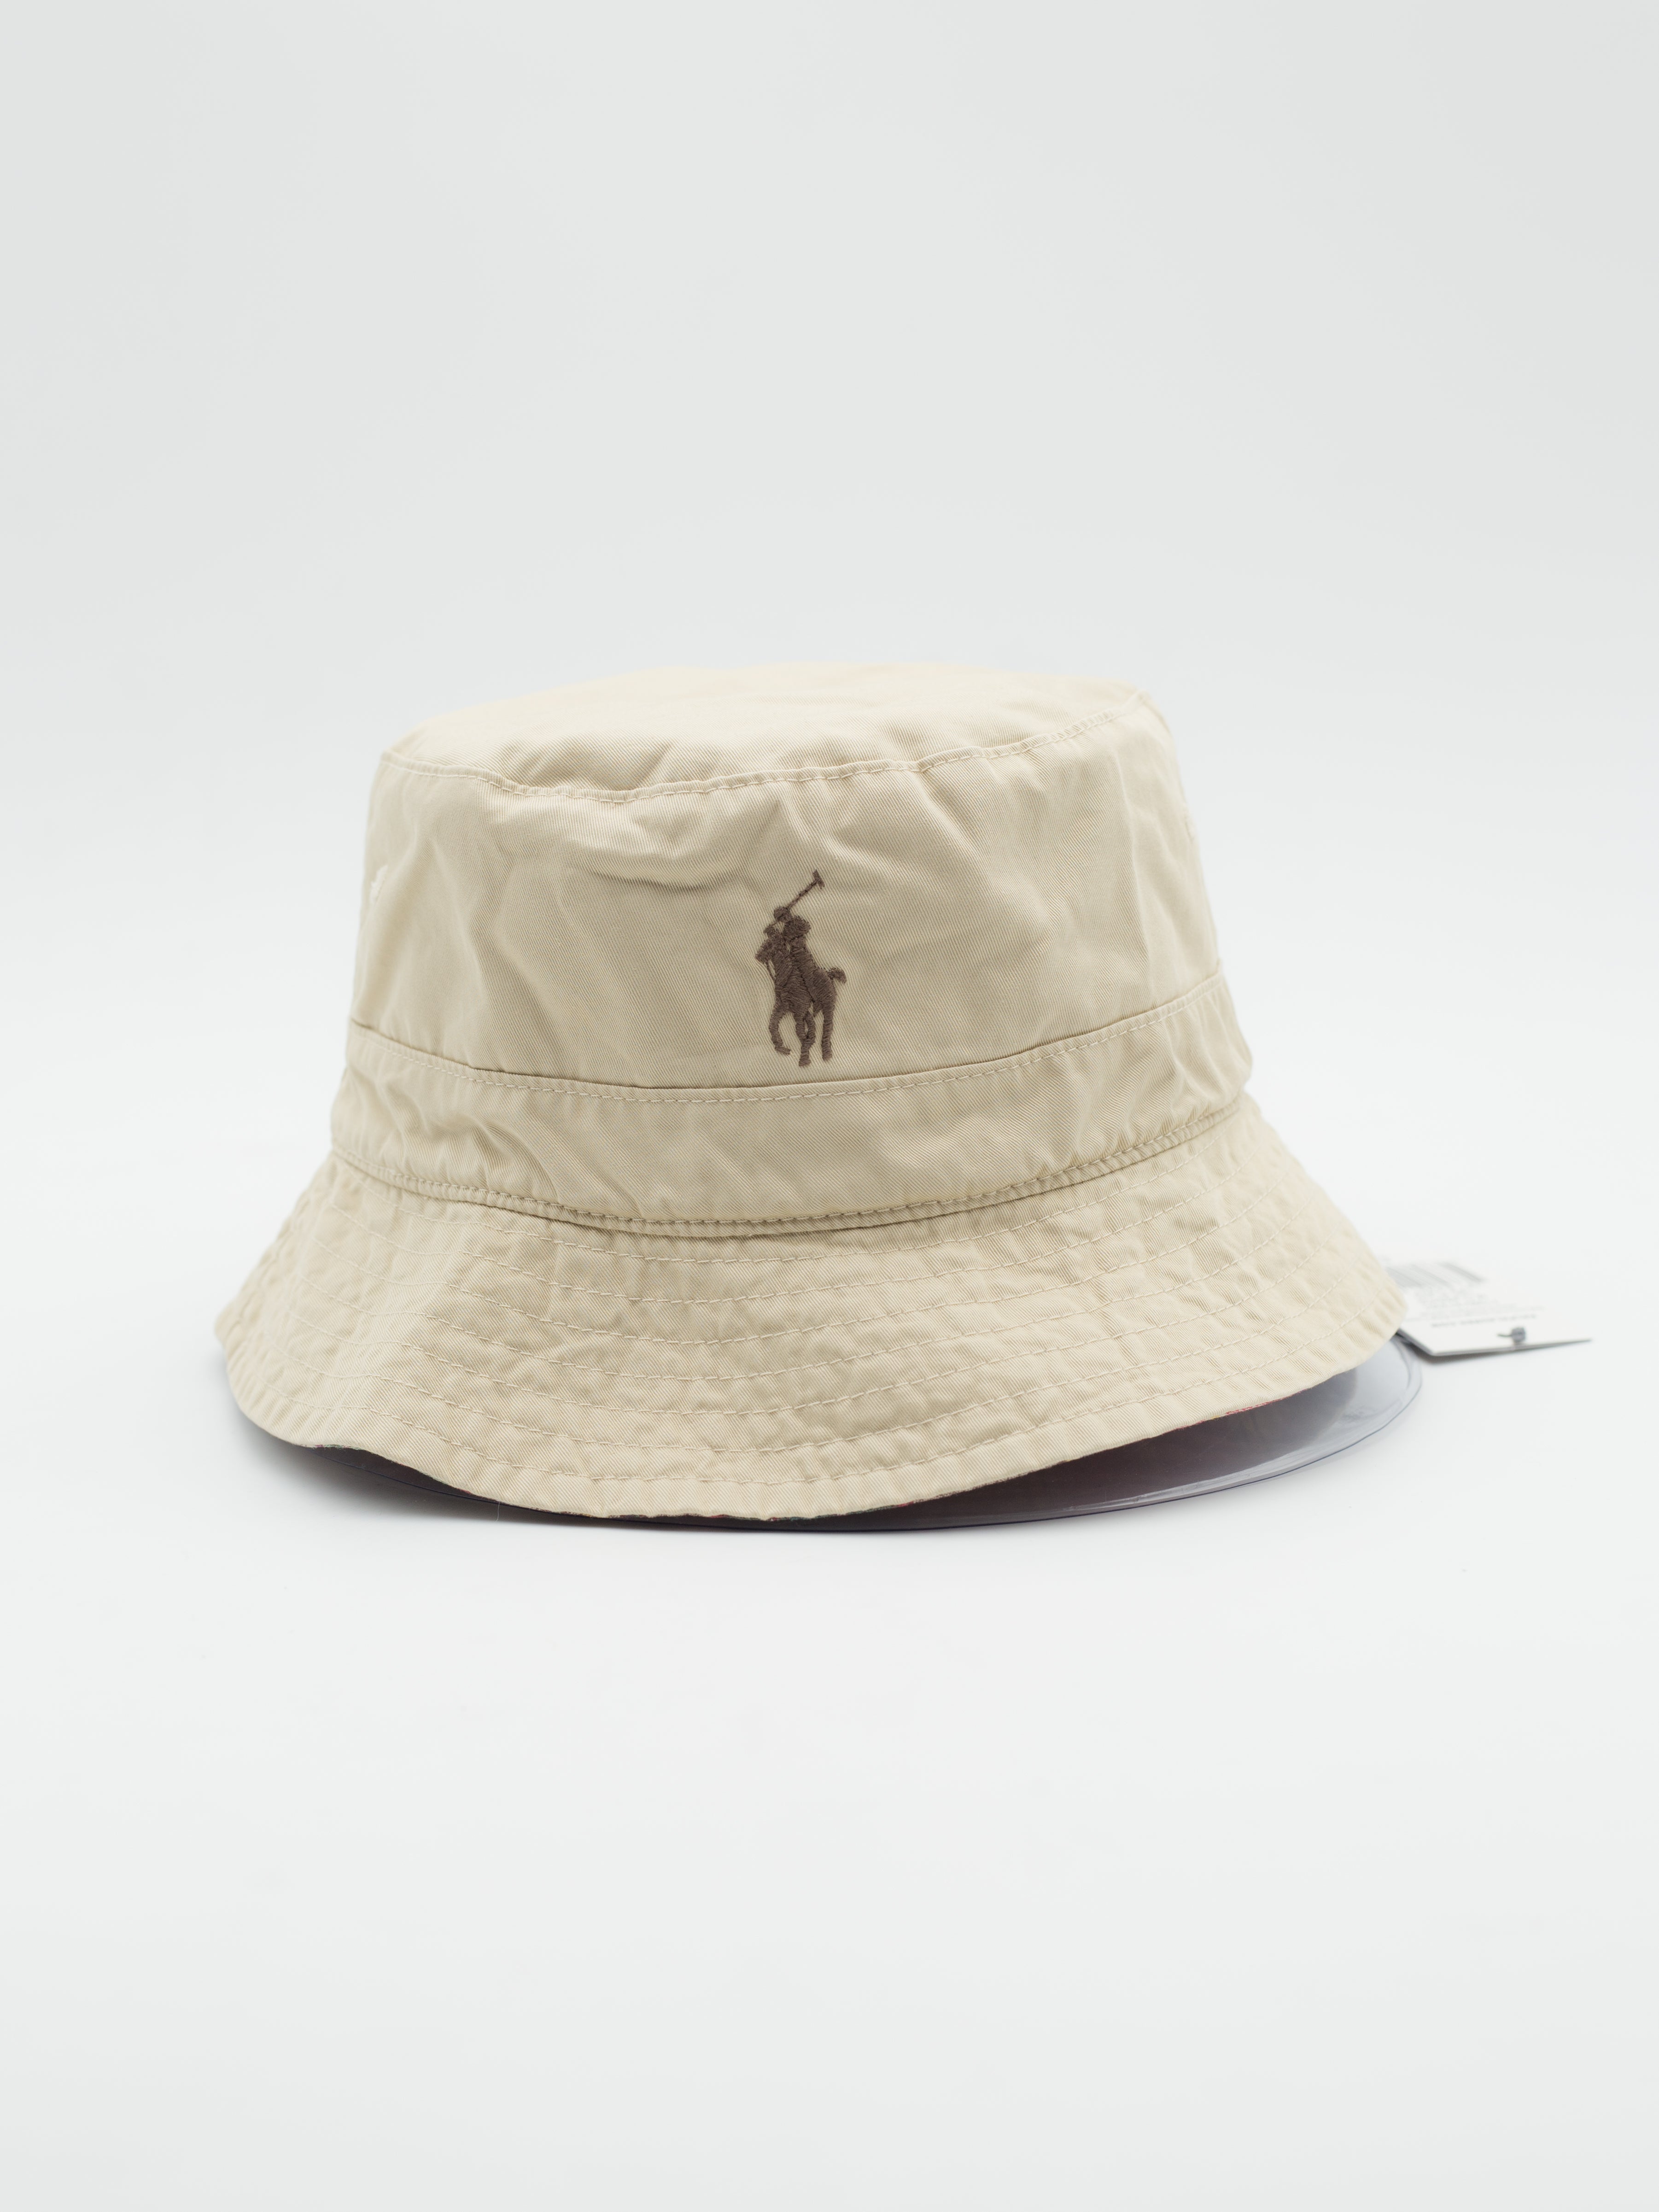 Classic TBD Polo Loft Bucket Hat Khaki Reversible - La Tienda de las Gorras